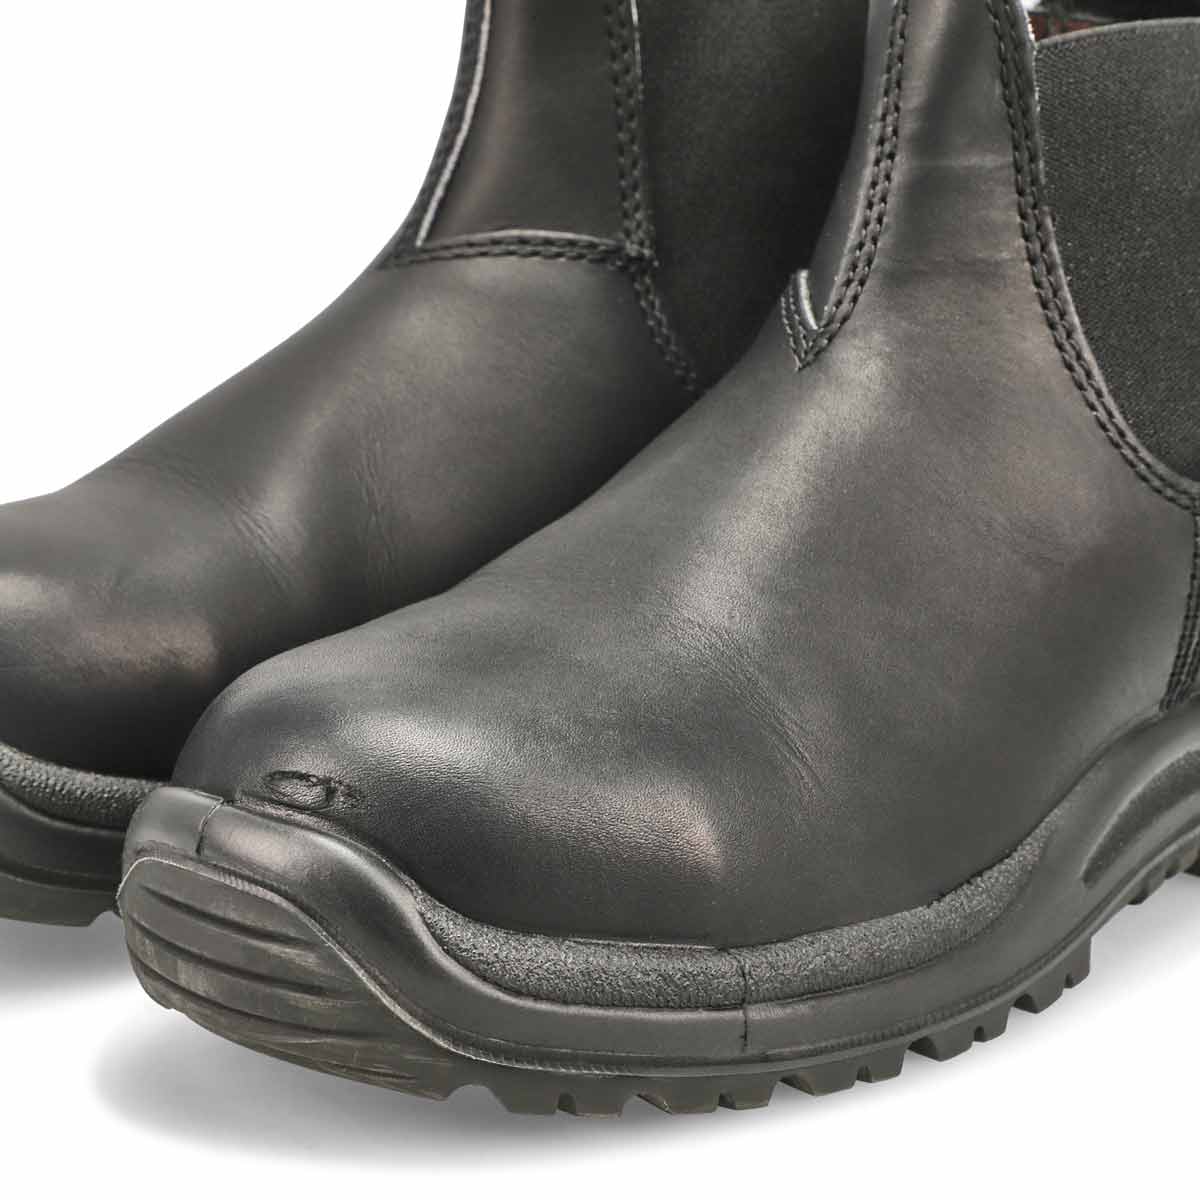 Unisex 163 - Work & Safety Boot - Black